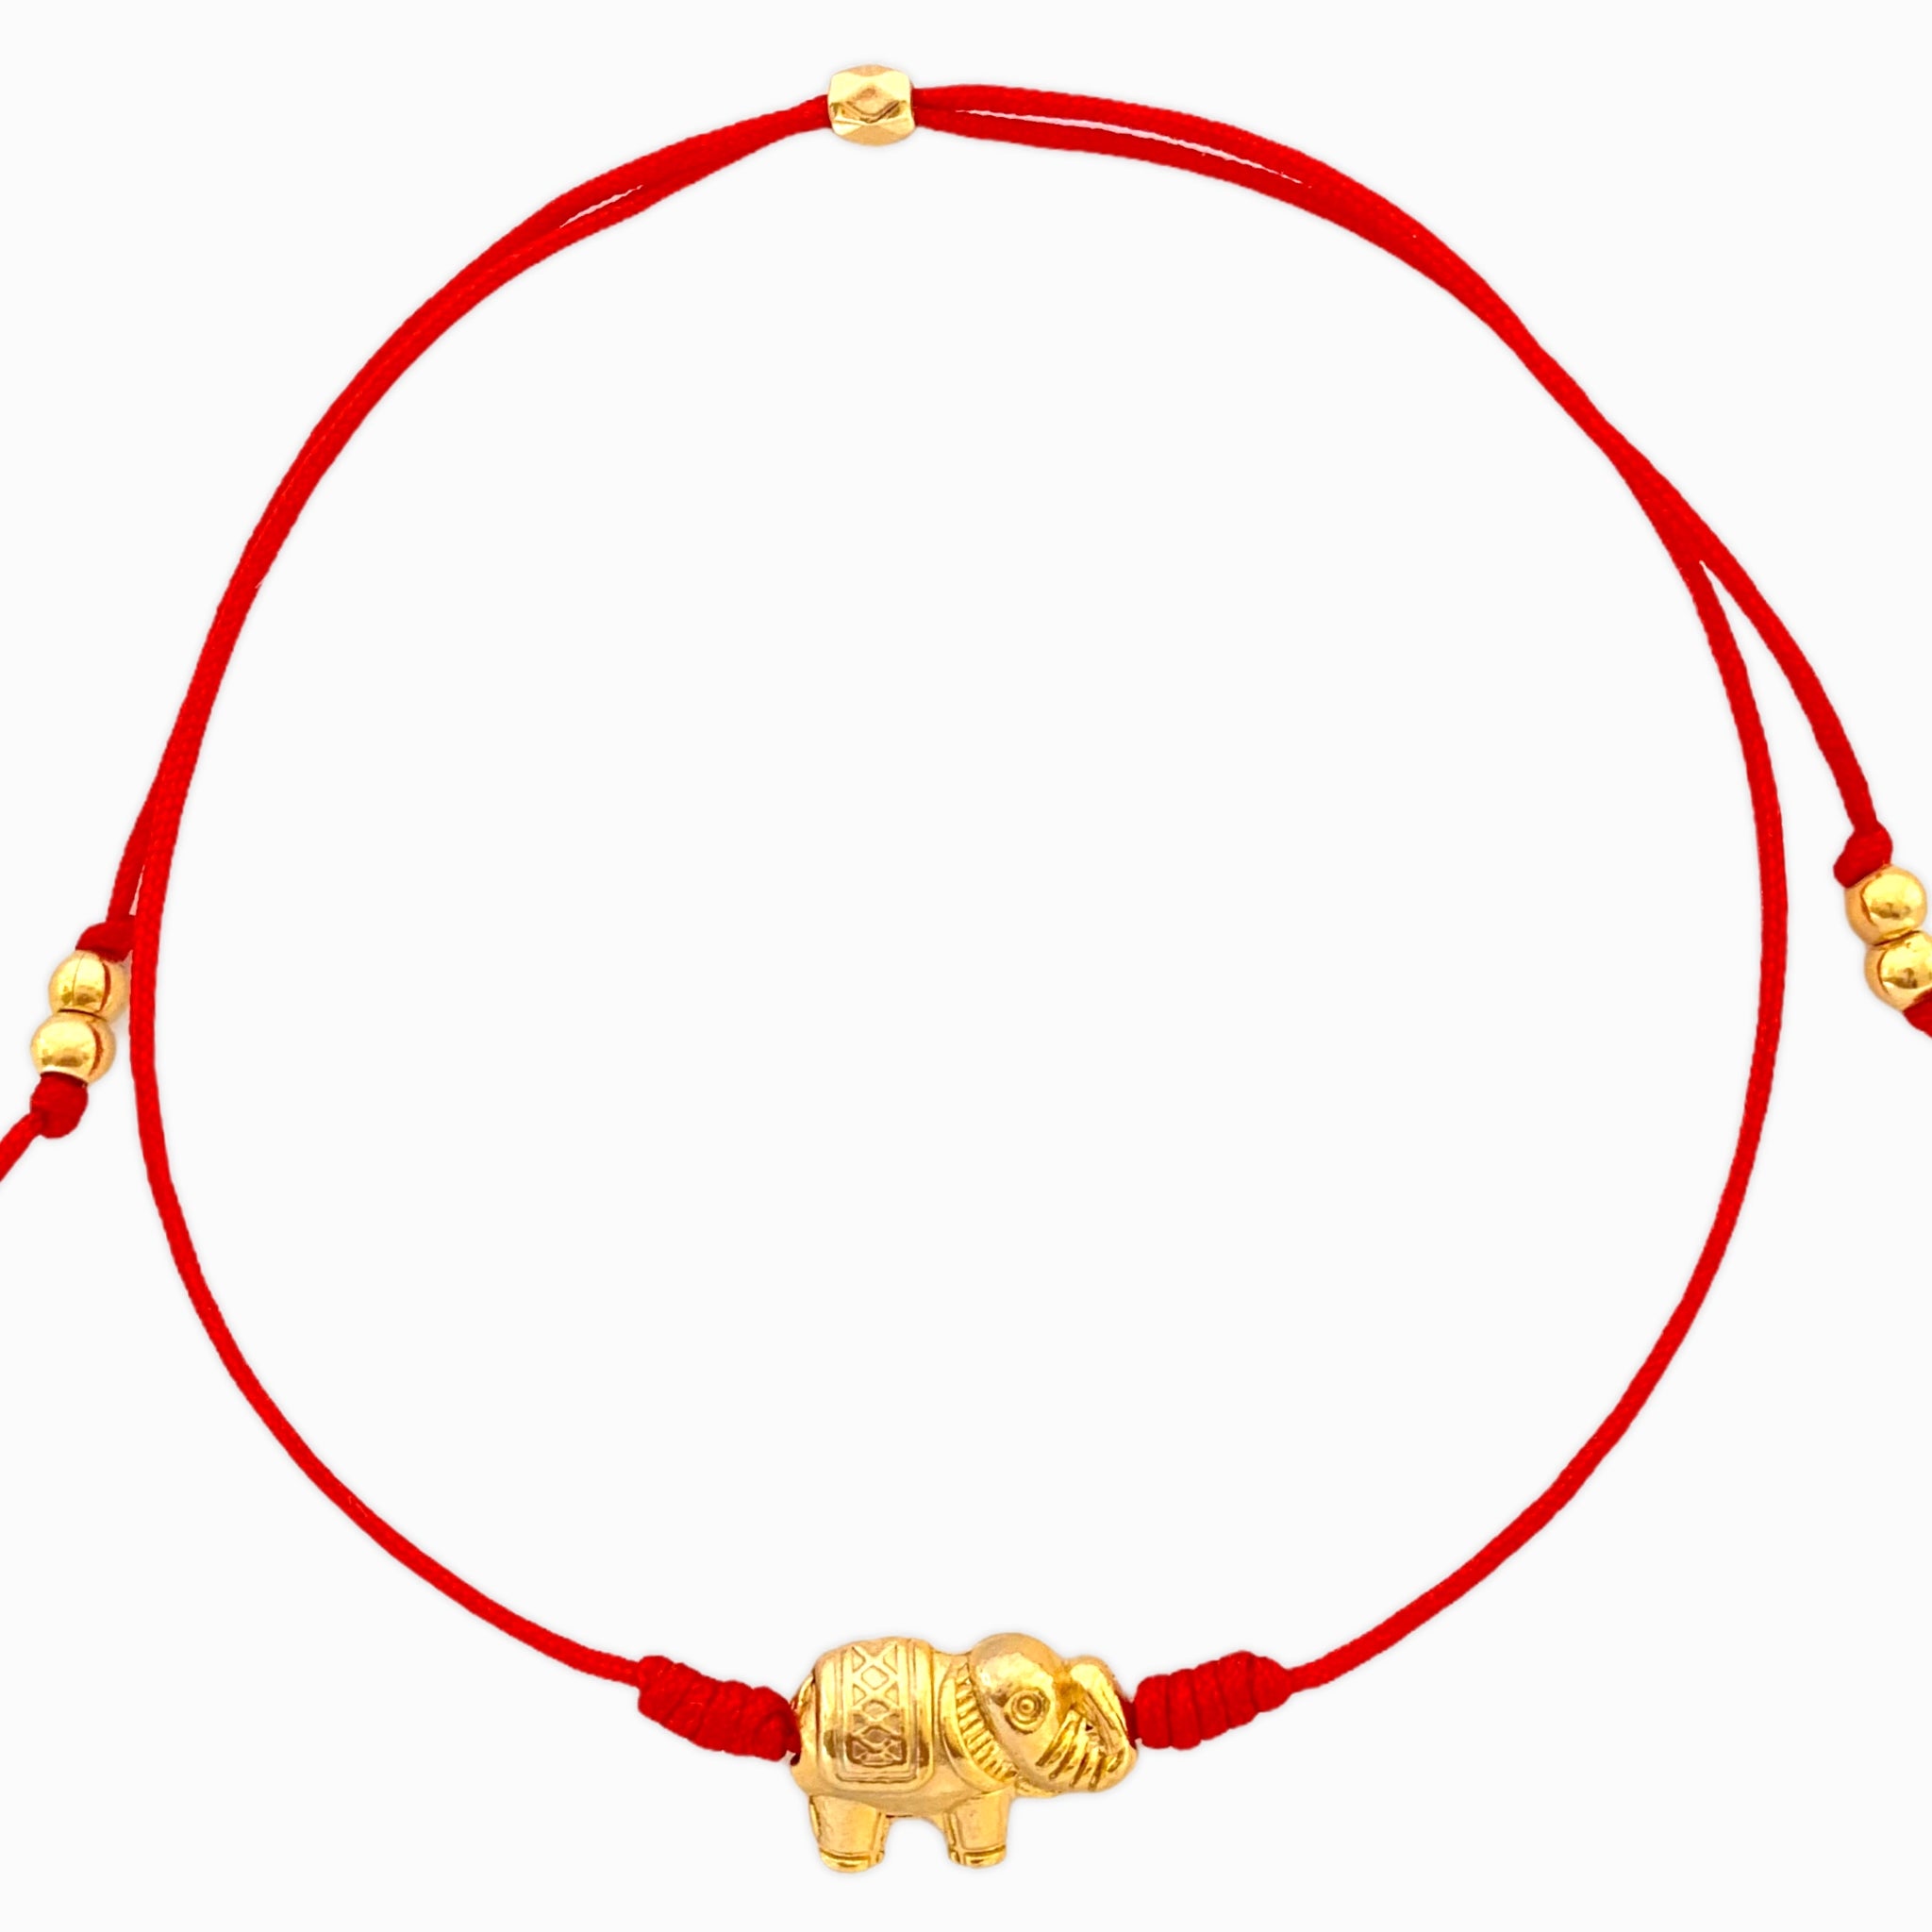 Elephant Bracelet with Yarn